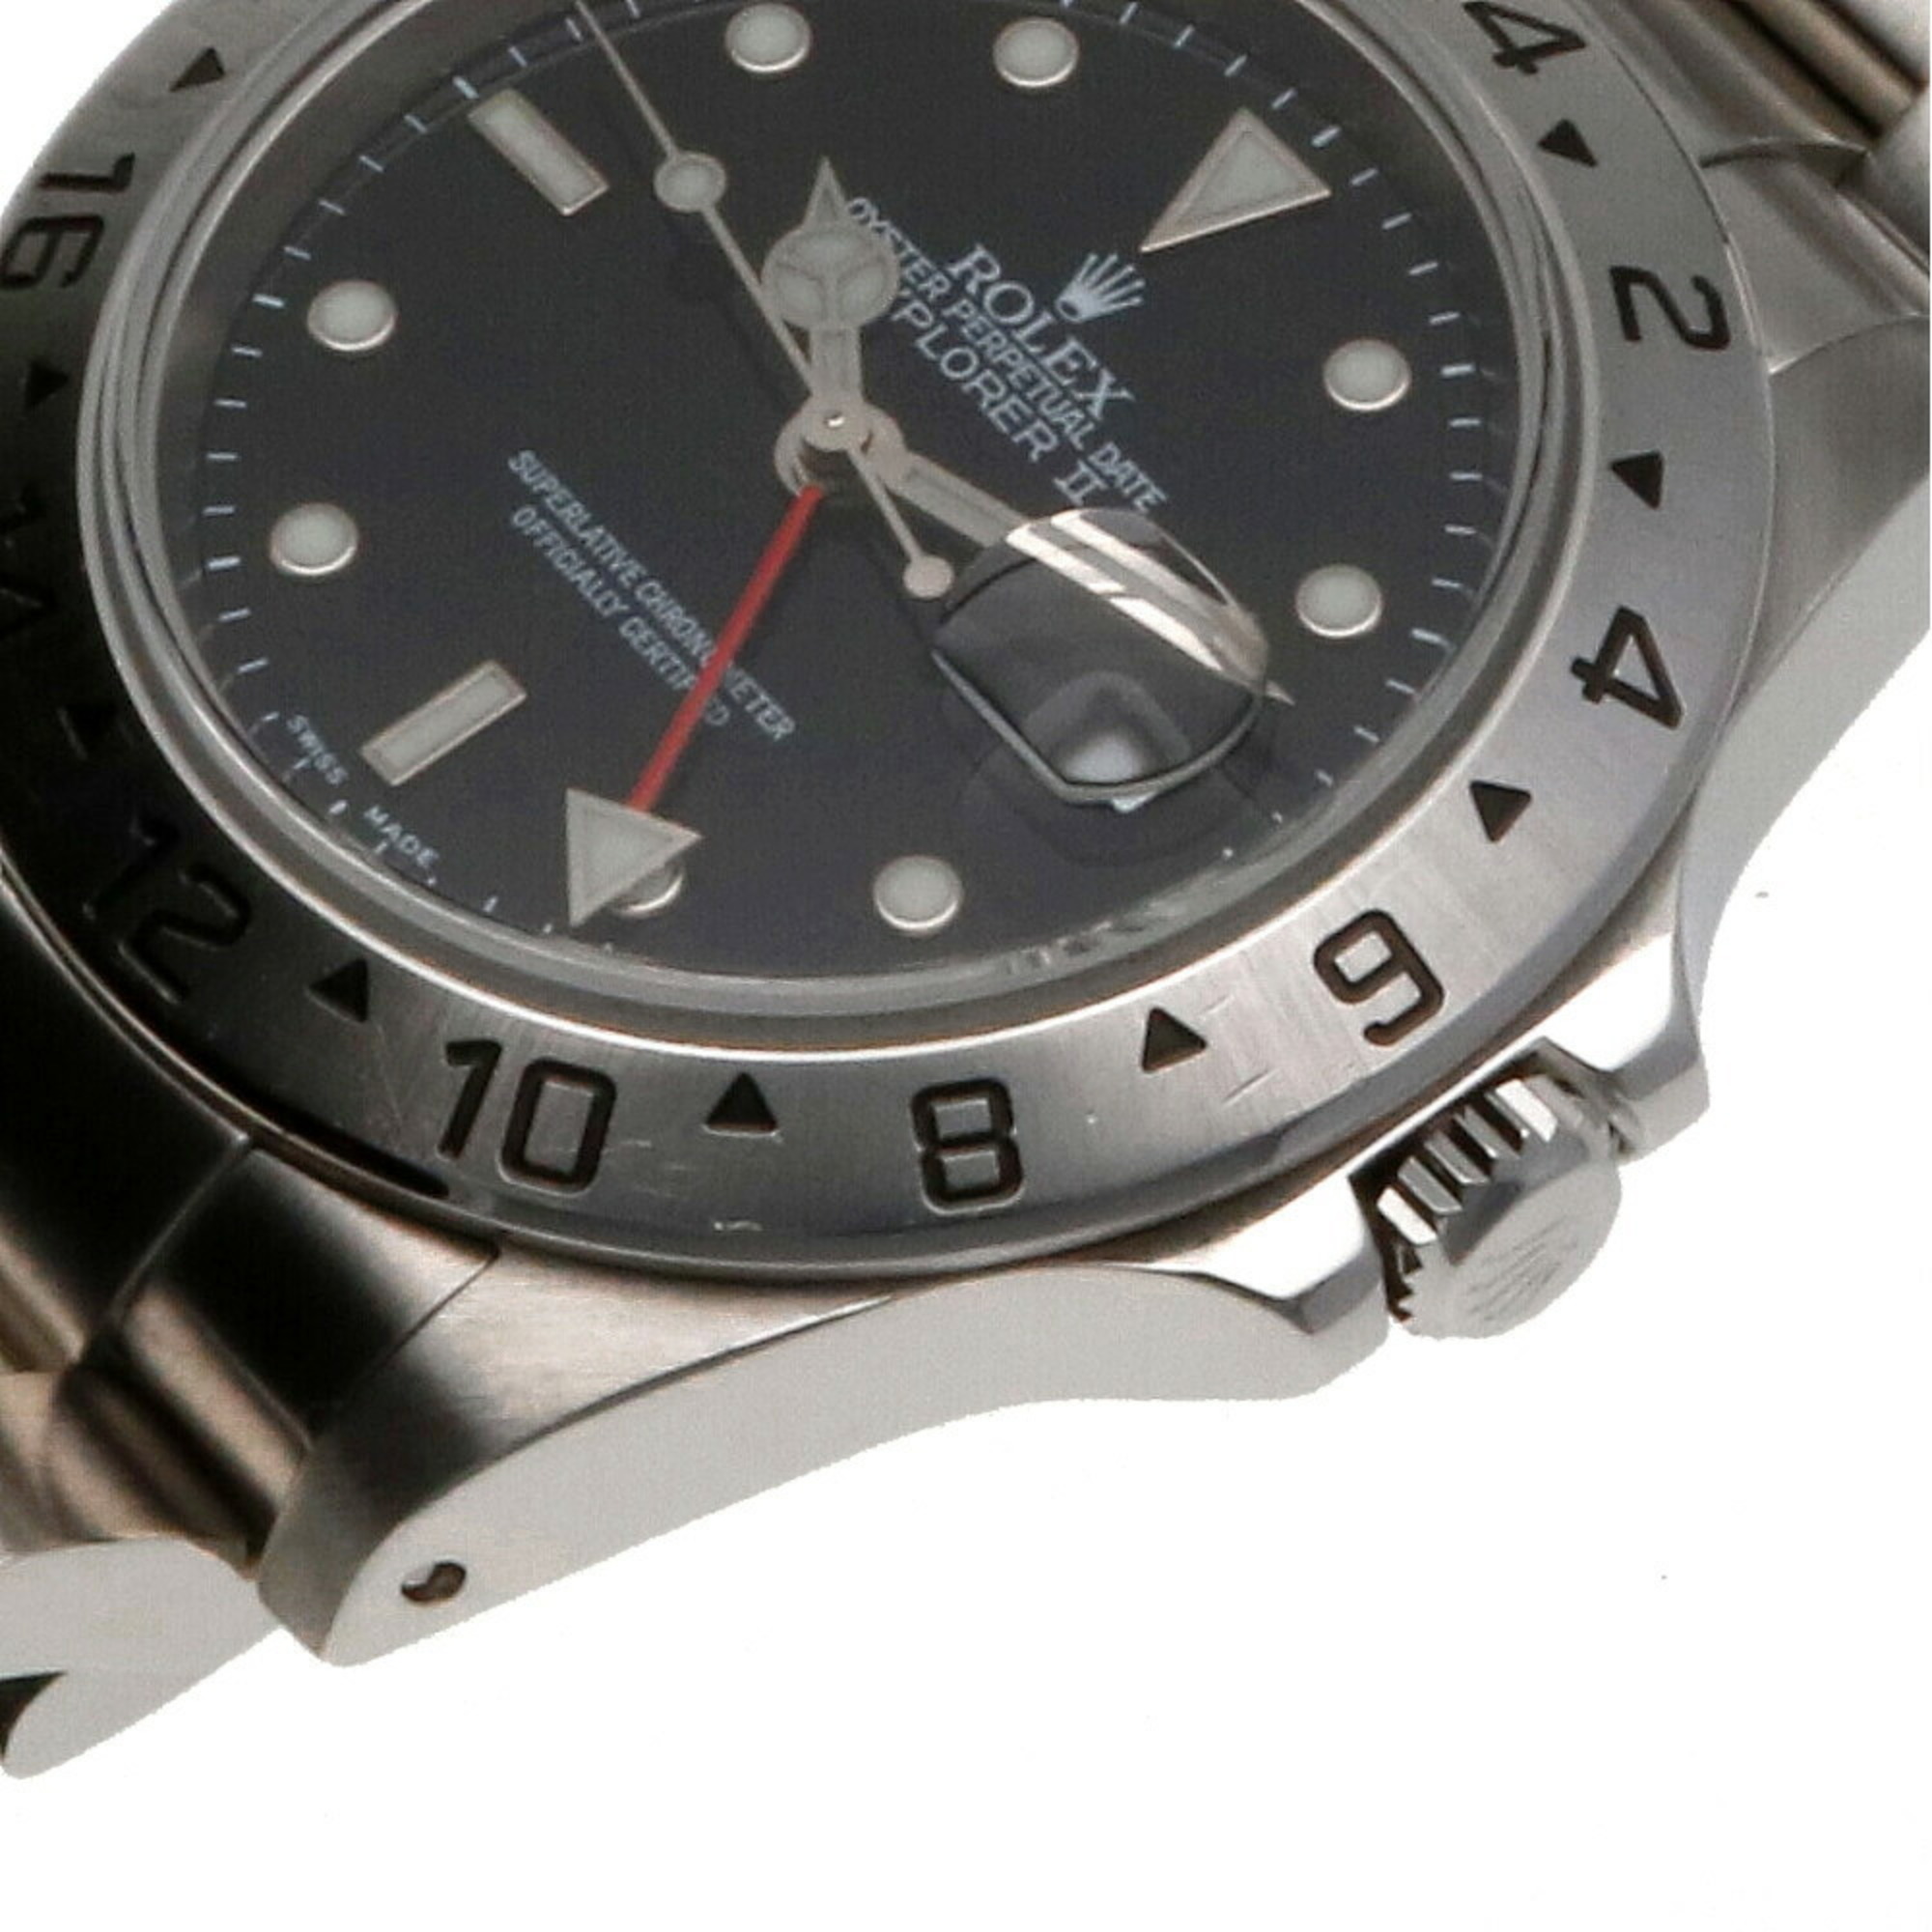 Rolex ROLEX Explorer Oyster Perpetual Watch SS 16570 Men's